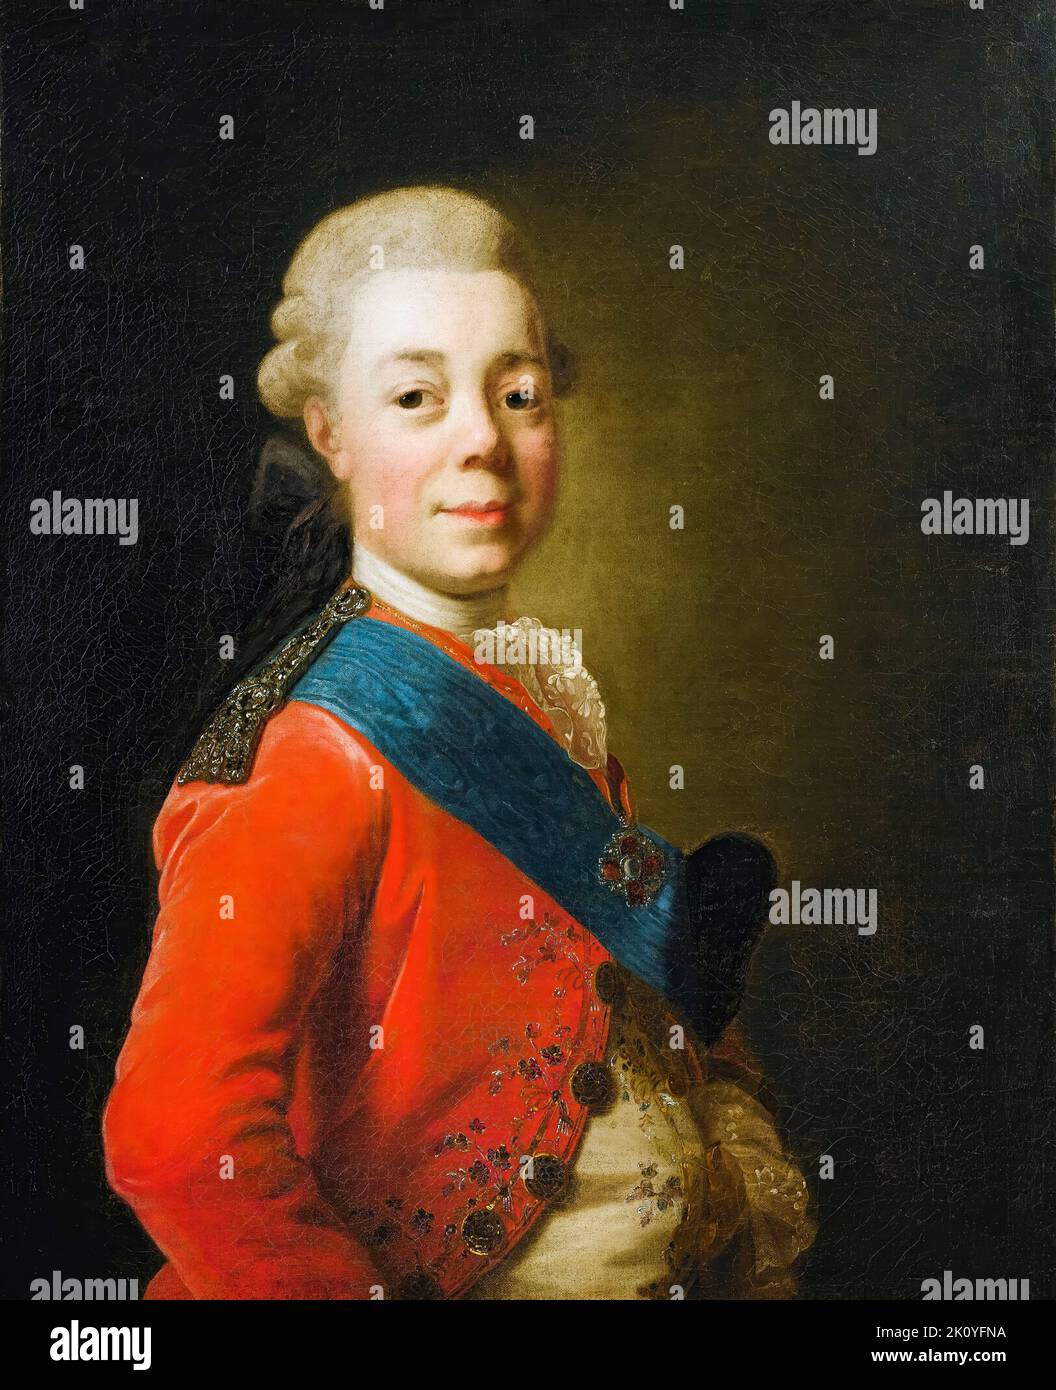 Paolo i (1754-1801), Imperatore di Russia (1796-1801), ritratto dipinto in olio su tela attribuito ad Alexander Roslin, prima del 1793 Foto Stock